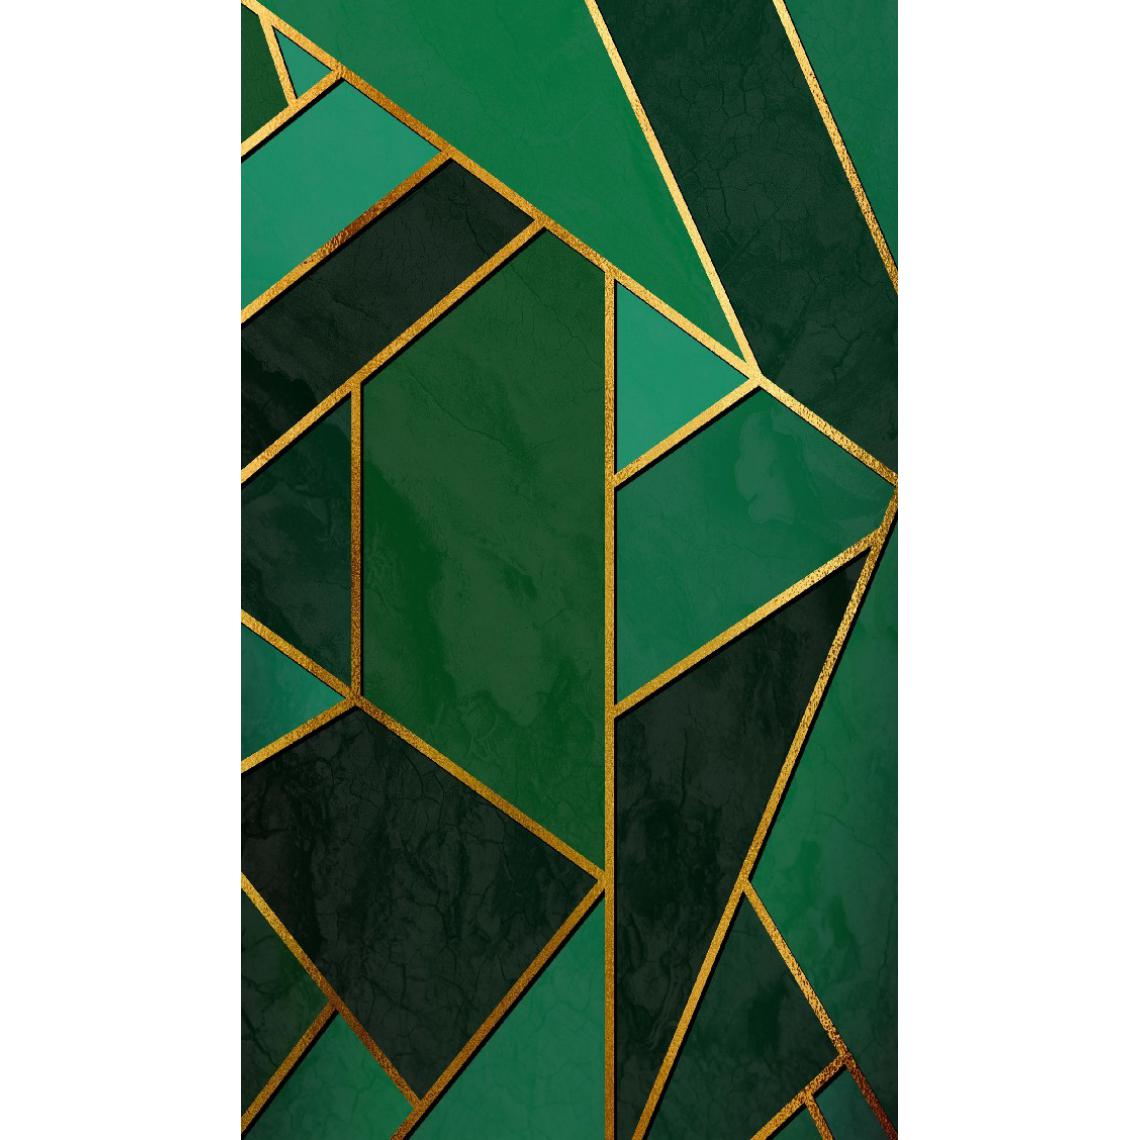 Homemania - HOMEMANIA Tapis Imprimé Gold Mosaic 1 - Géométrique - Décoration de Maison - Antidérapant - Pour Salon, séjour, chambre à coucher - Multicolore en Polyester, Coton, 80 x 120 cm - Tapis